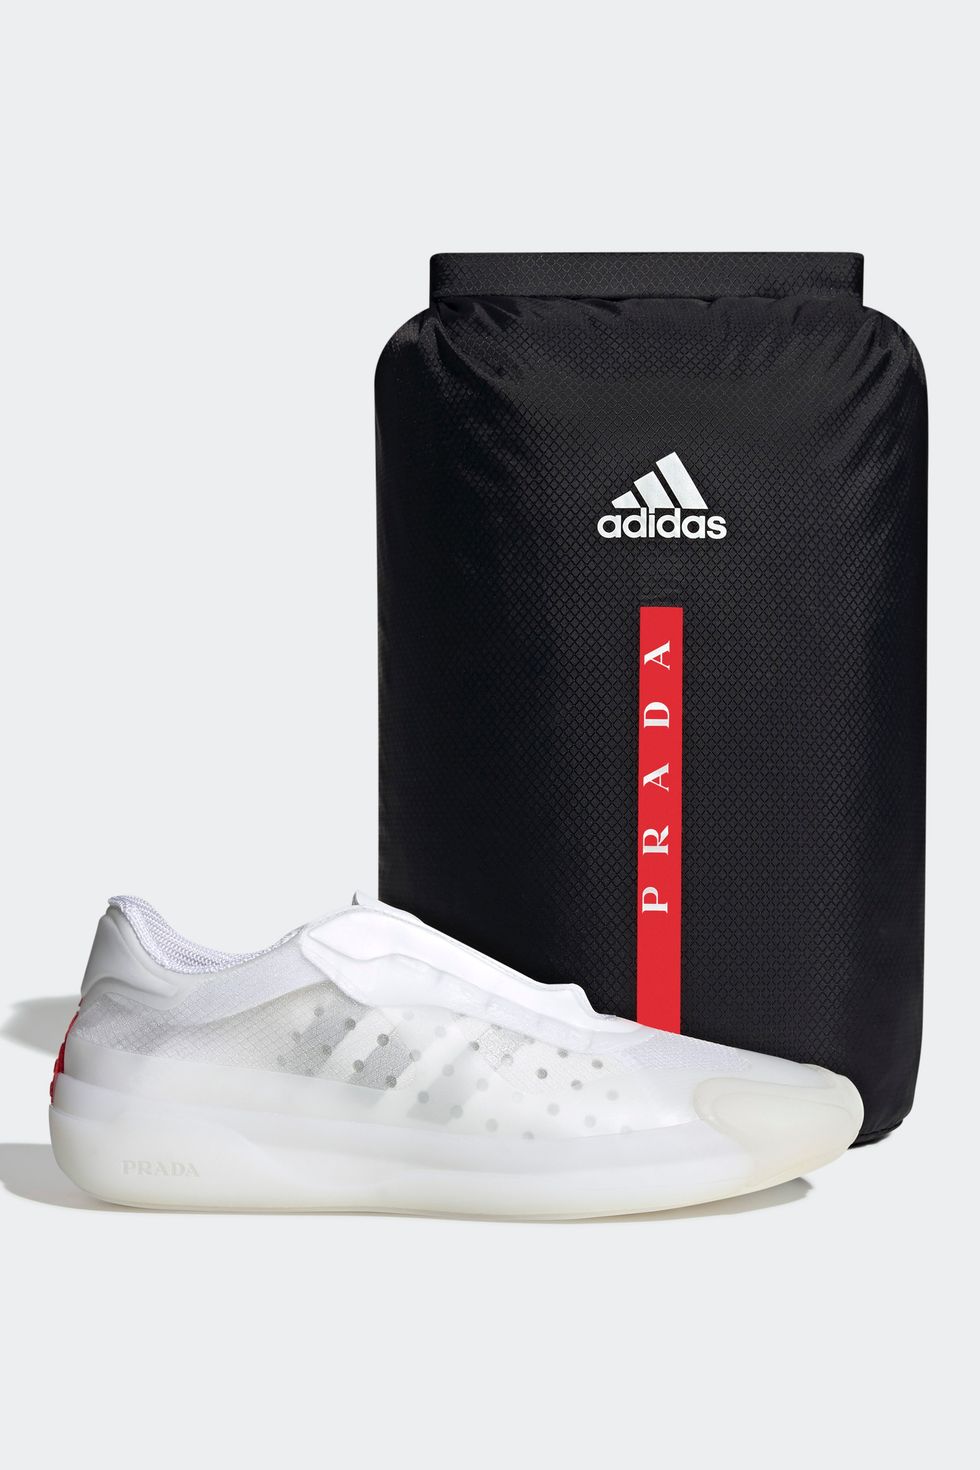 Adidas y Prada se unen para crear la zapatilla deportiva más elegante del  mercado